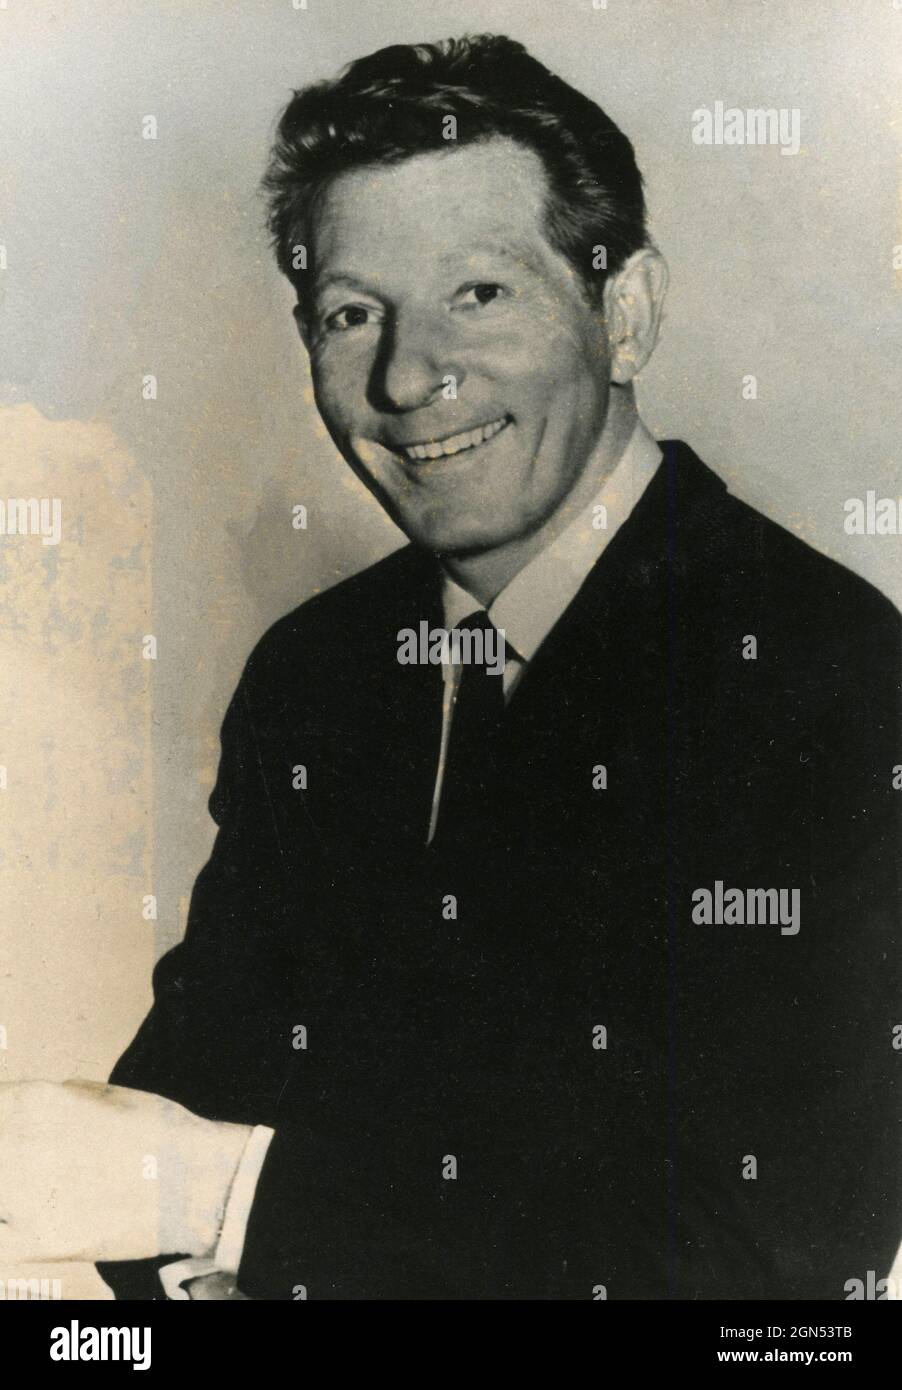 Der amerikanische Filmschauspieler und Komiker Danny Kaye, 1970er Jahre Stockfoto